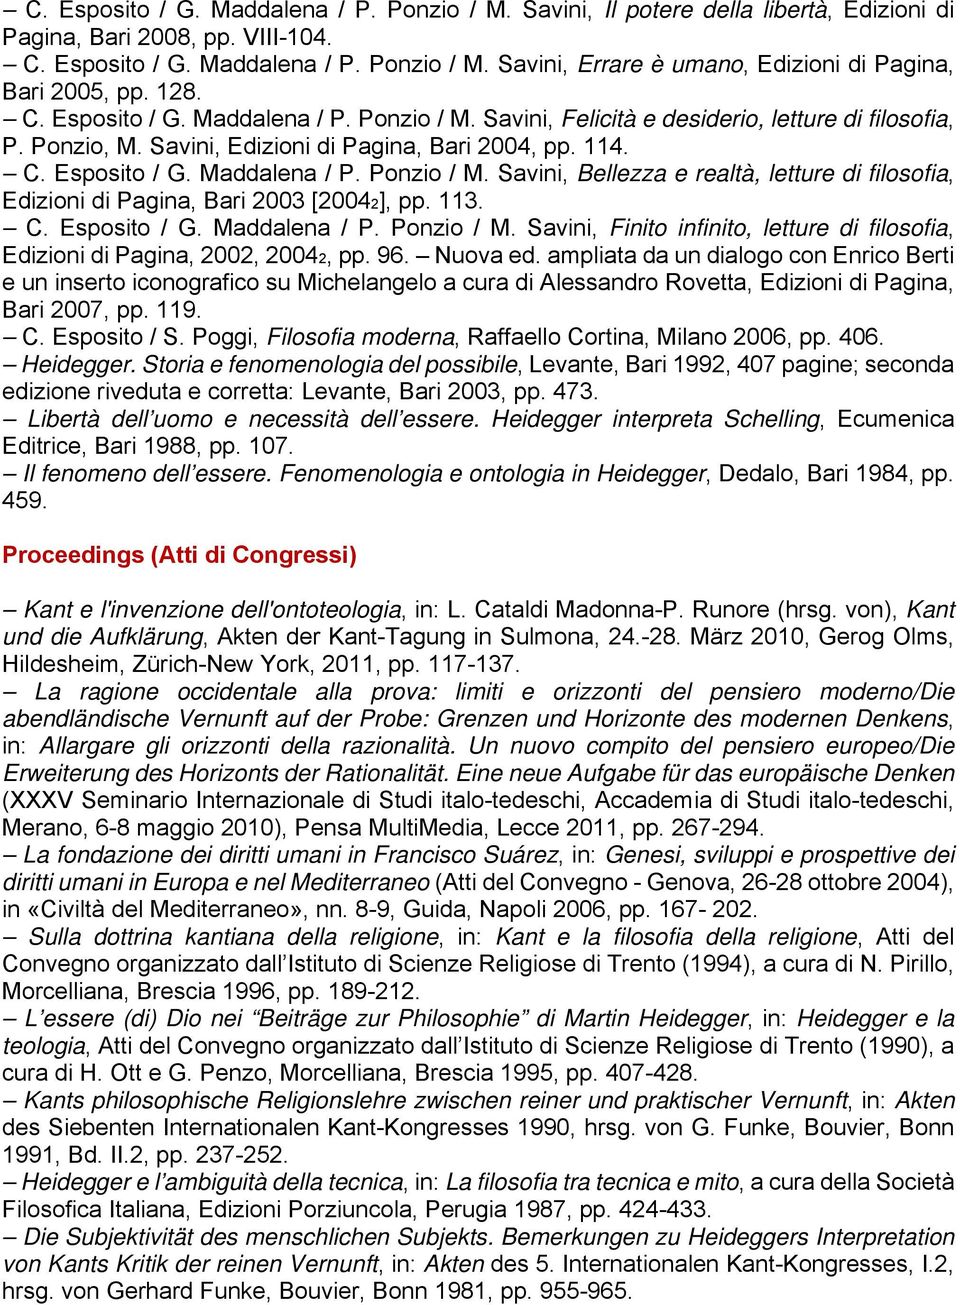 113. C. Esposito / G. Maddalena / P. Ponzio / M. Savini, Finito infinito, letture di filosofia, Edizioni di Pagina, 2002, 20042, pp. 96. Nuova ed.